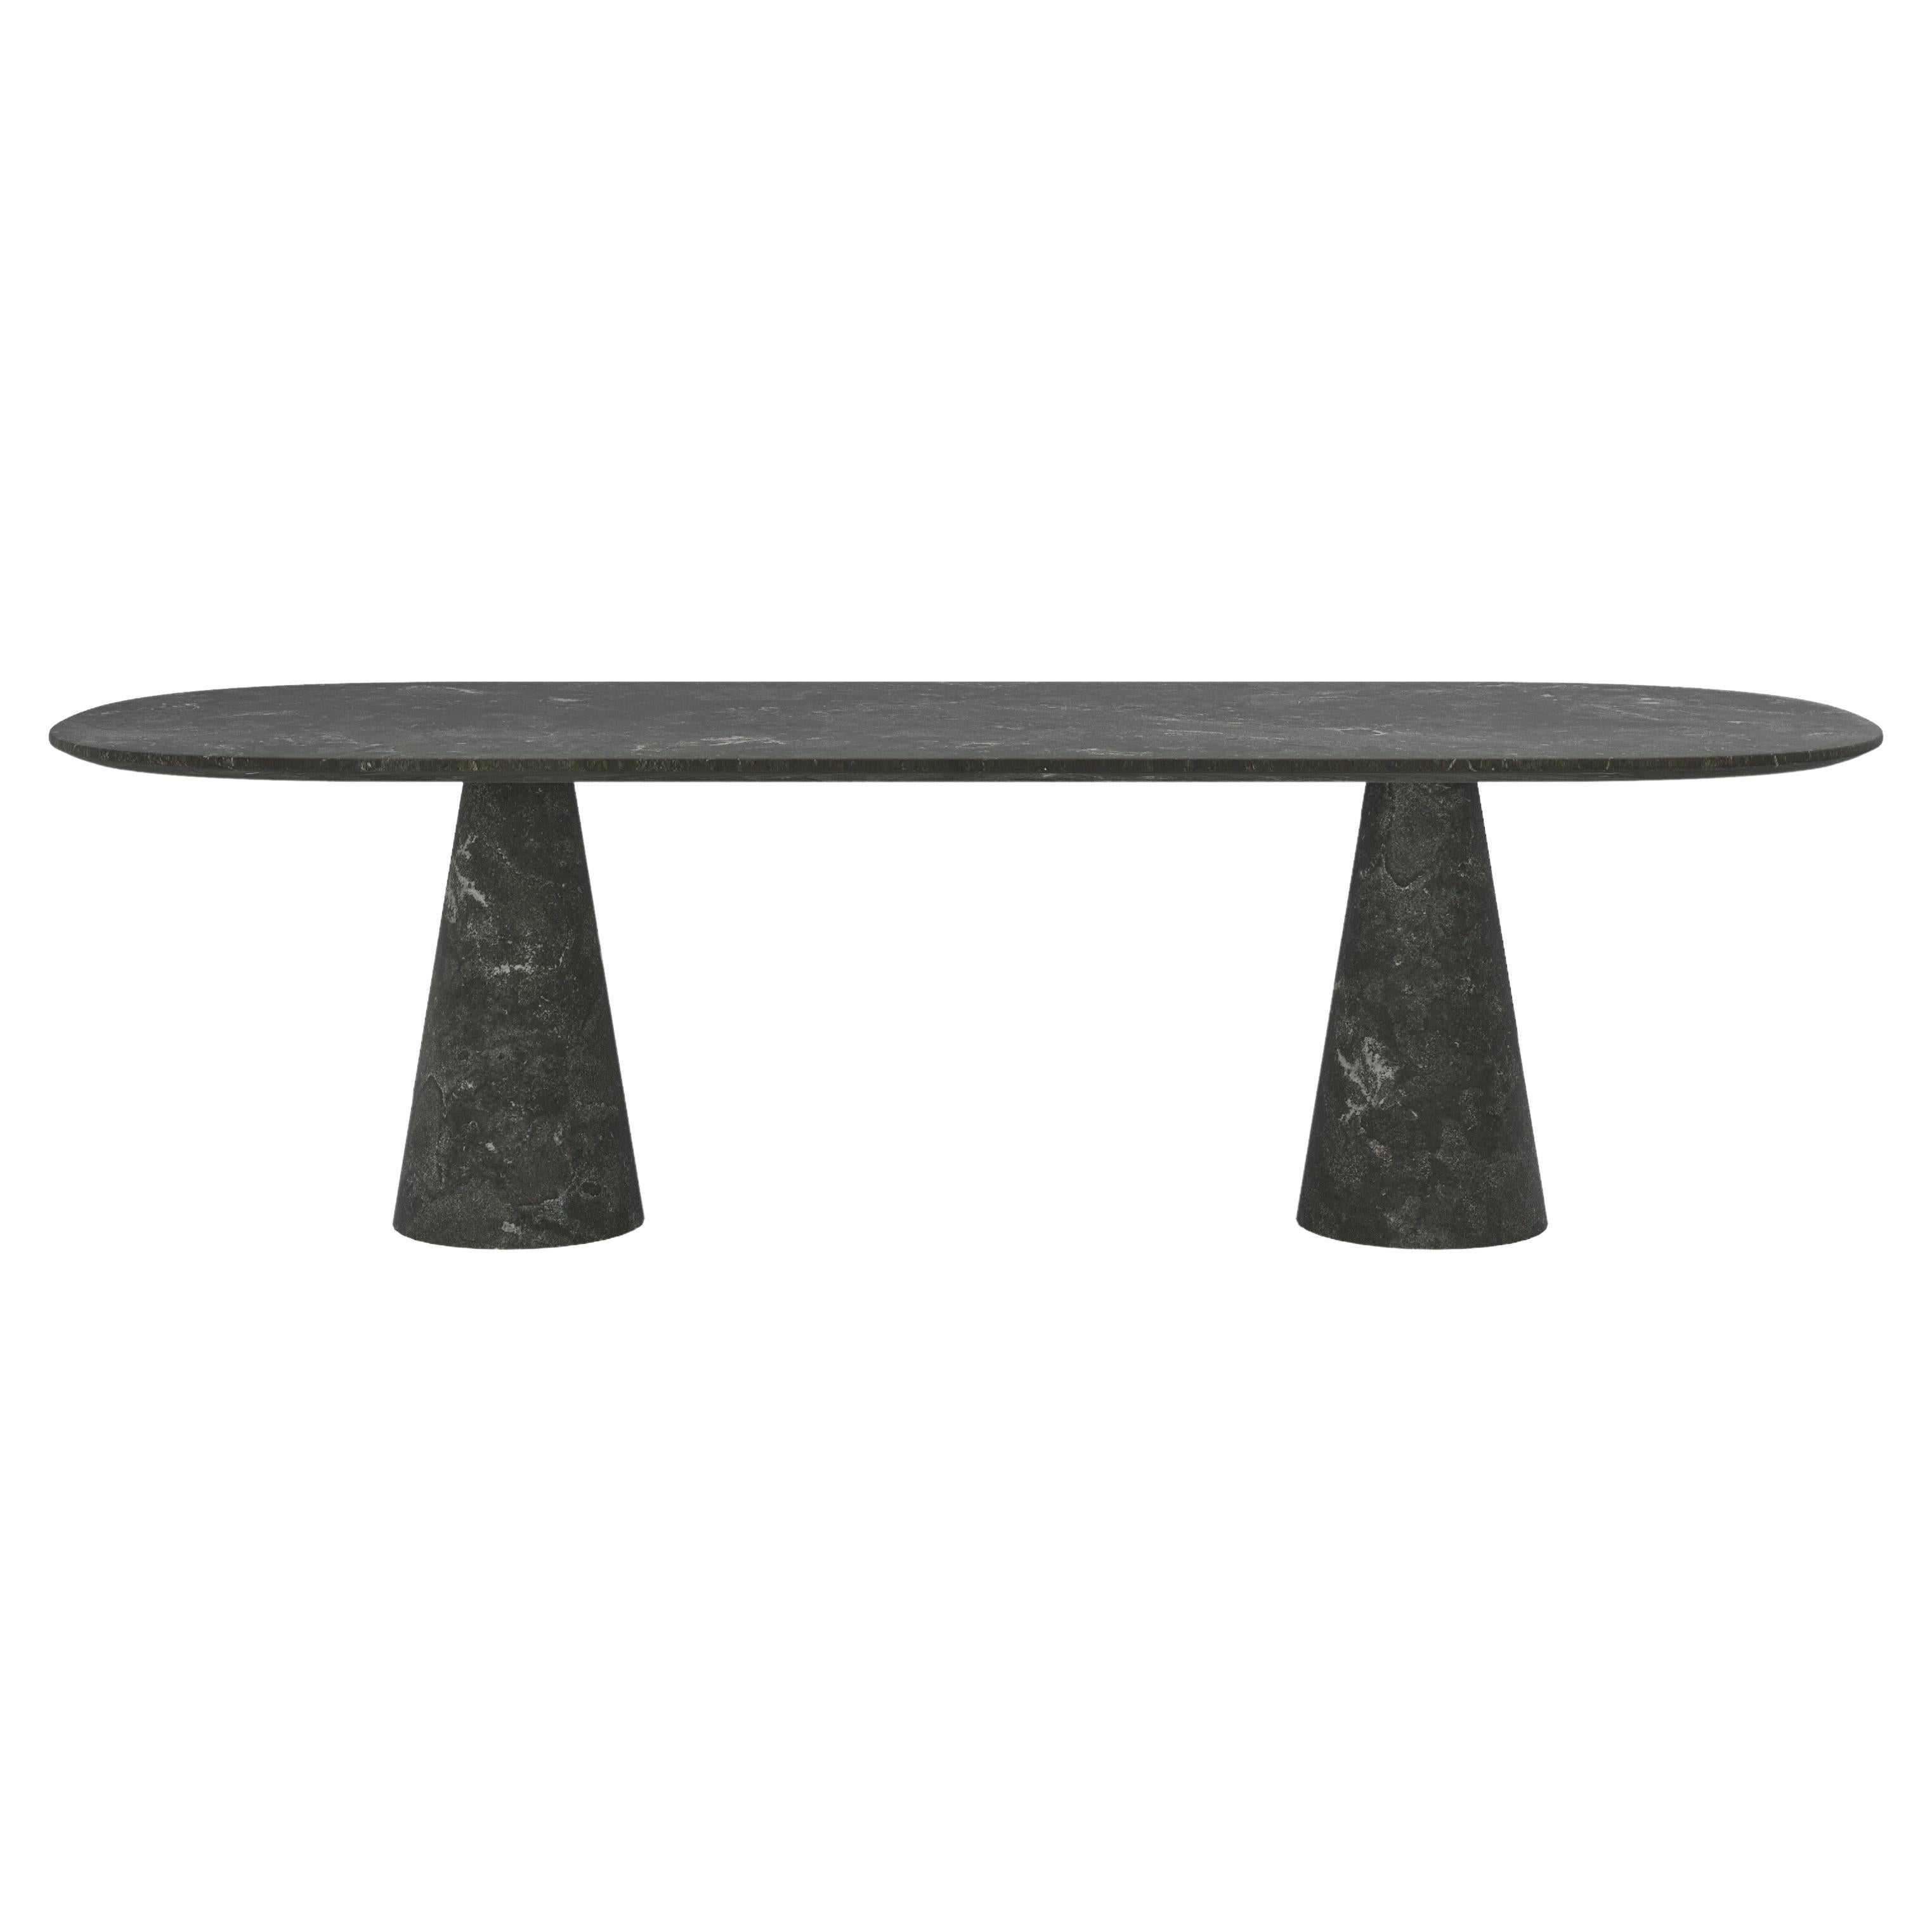 FORM(LA) Cono Oval Dining Table 118”L x 48”W x 30”H Nero Petite Granite